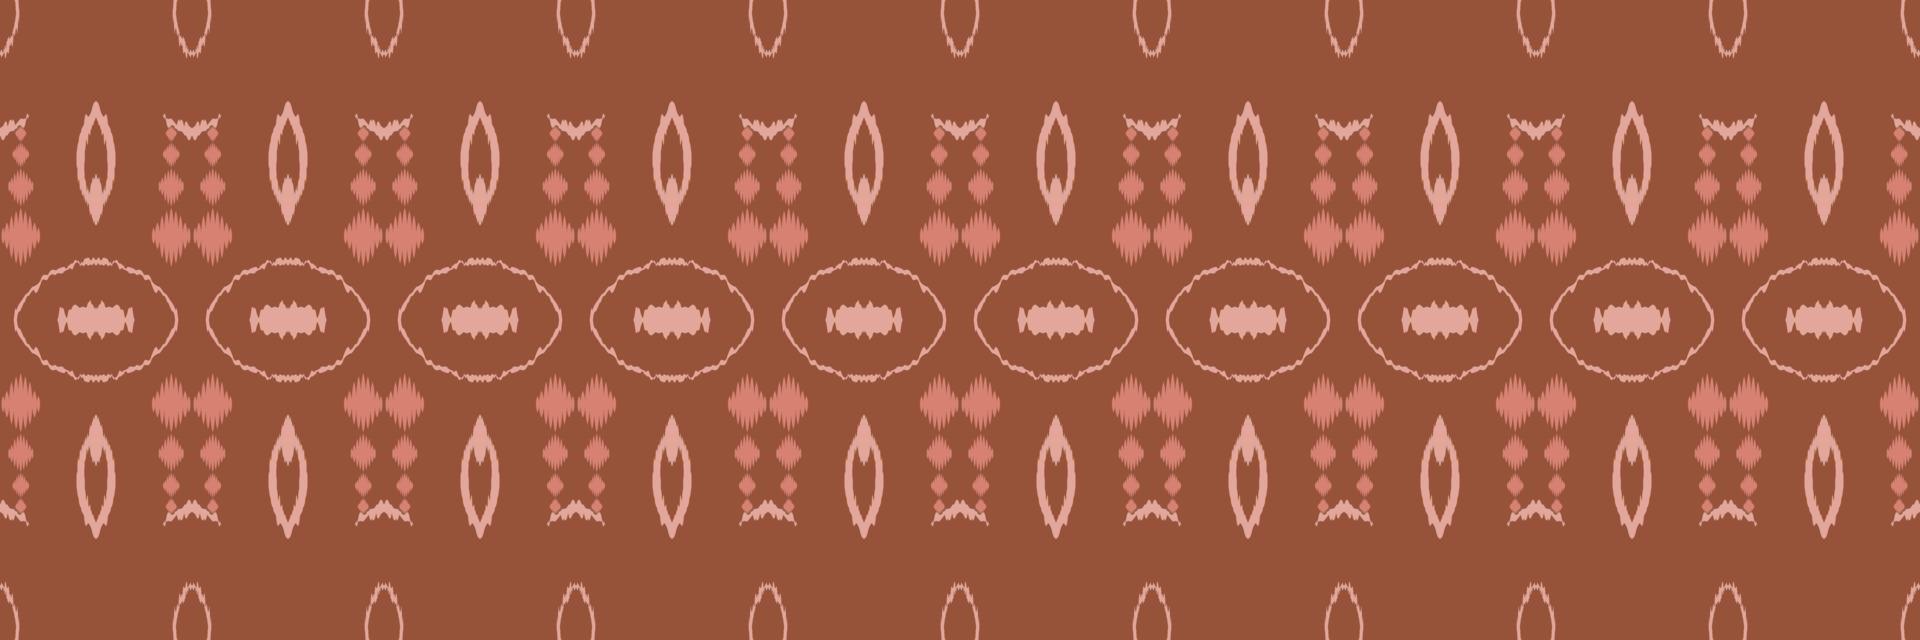 ikat-punkte stammeskreuz nahtloses muster. ethnische geometrische ikkat batik digitaler vektor textildesign für drucke stoff saree mughal pinsel symbol schwaden textur kurti kurtis kurtas